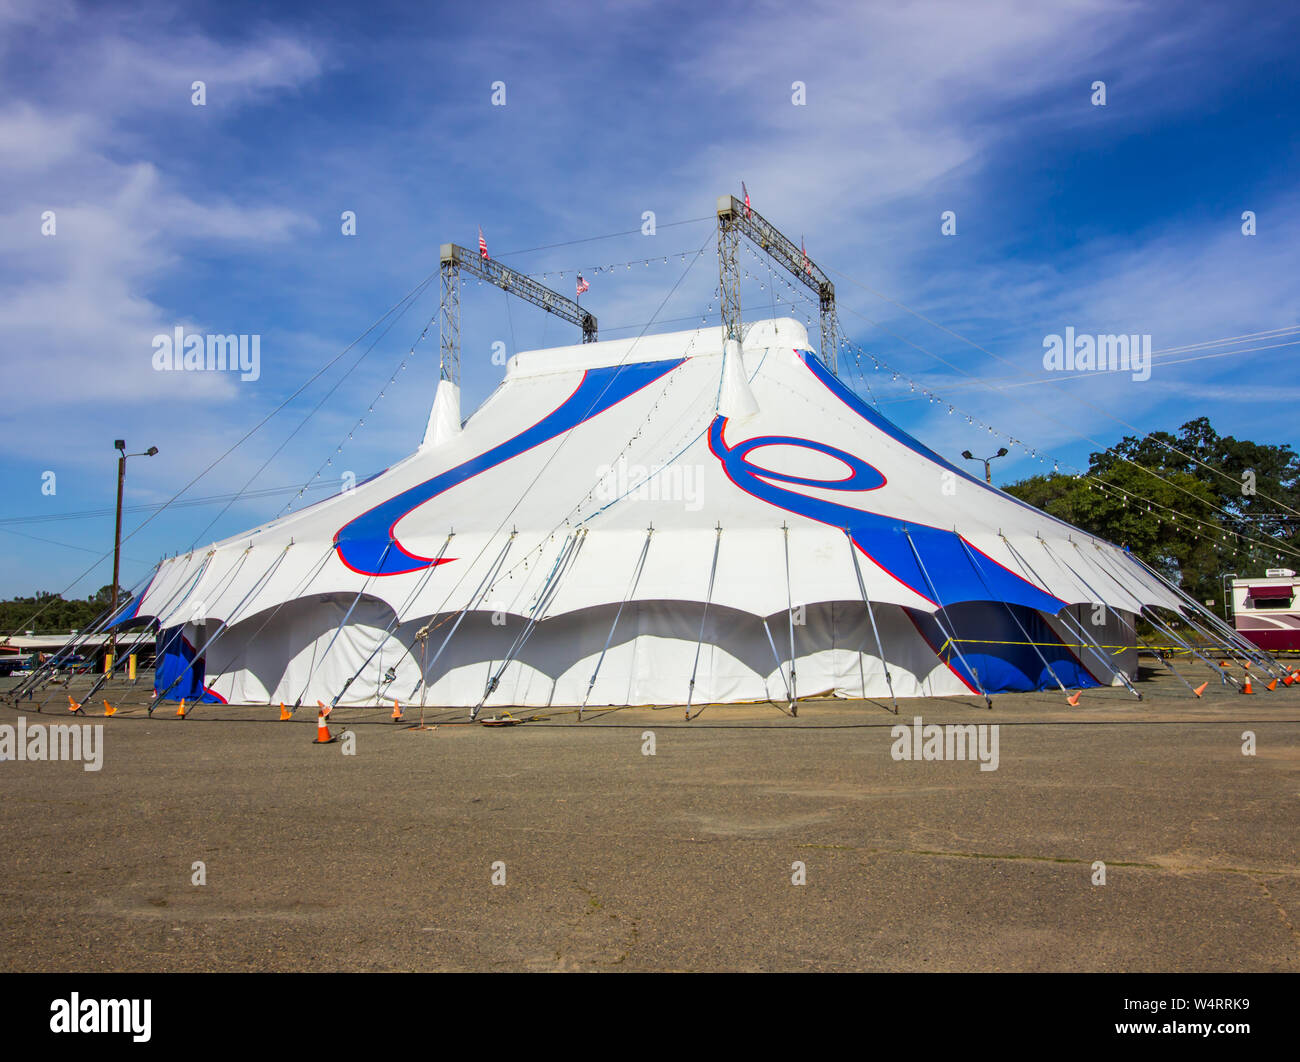 Blaue und Weiße Leinwand Big Top Zirkuszelt Stockfotografie - Alamy